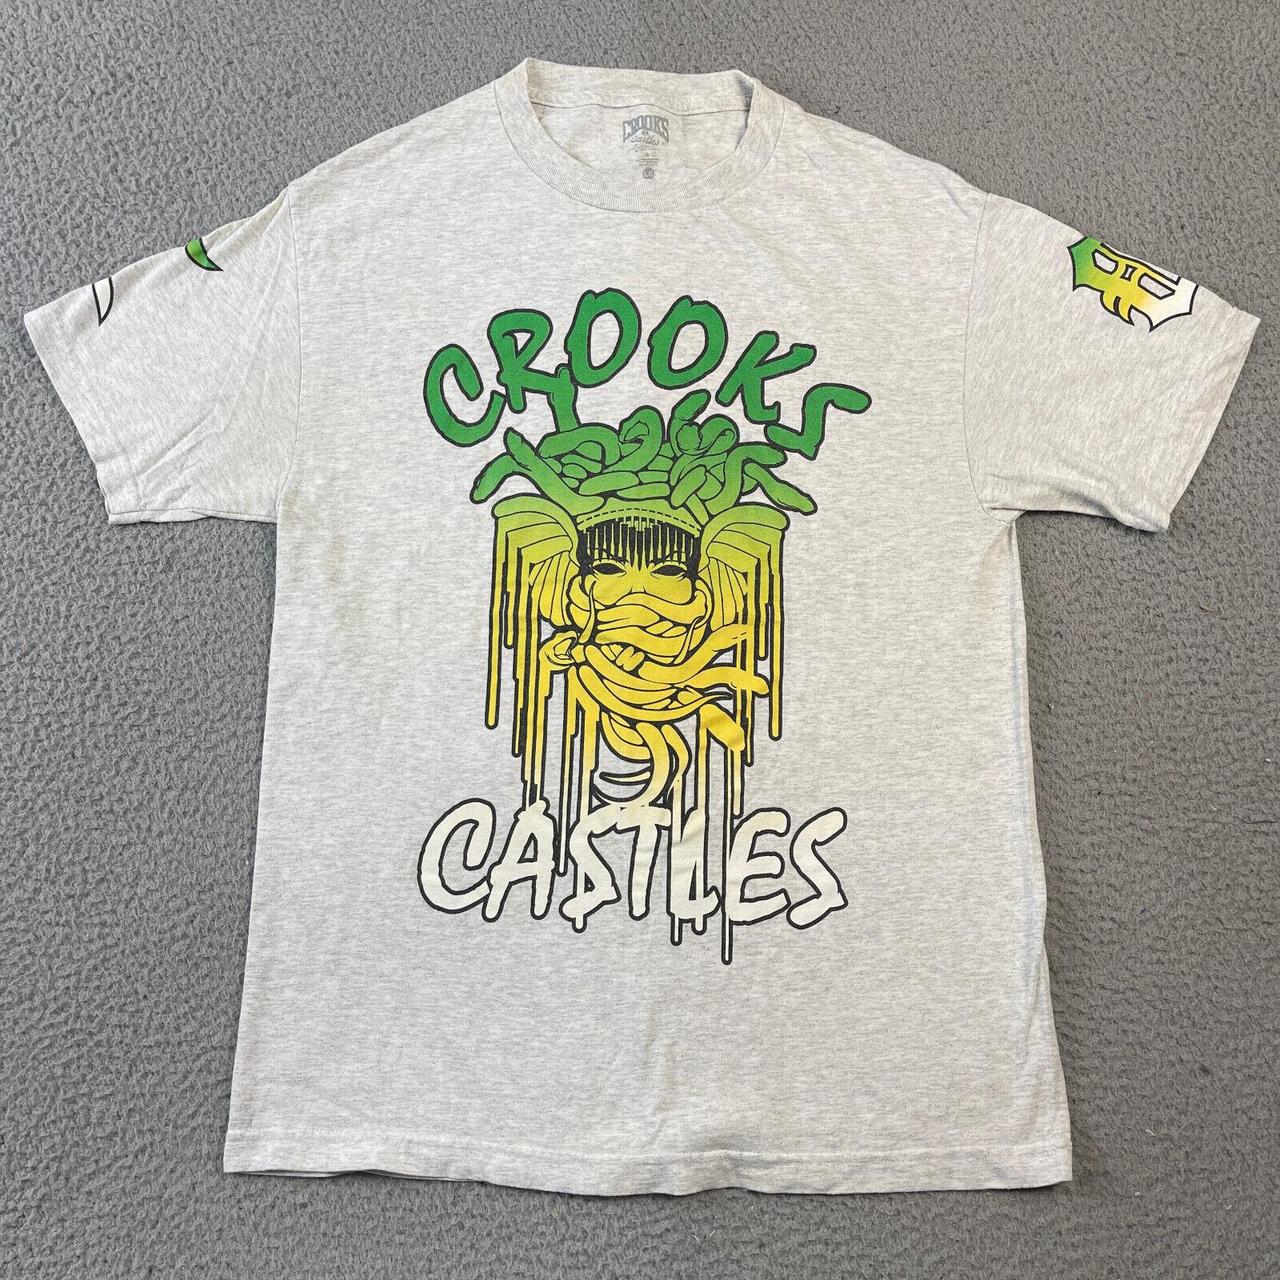 Crooks & Castles Men's Shirt